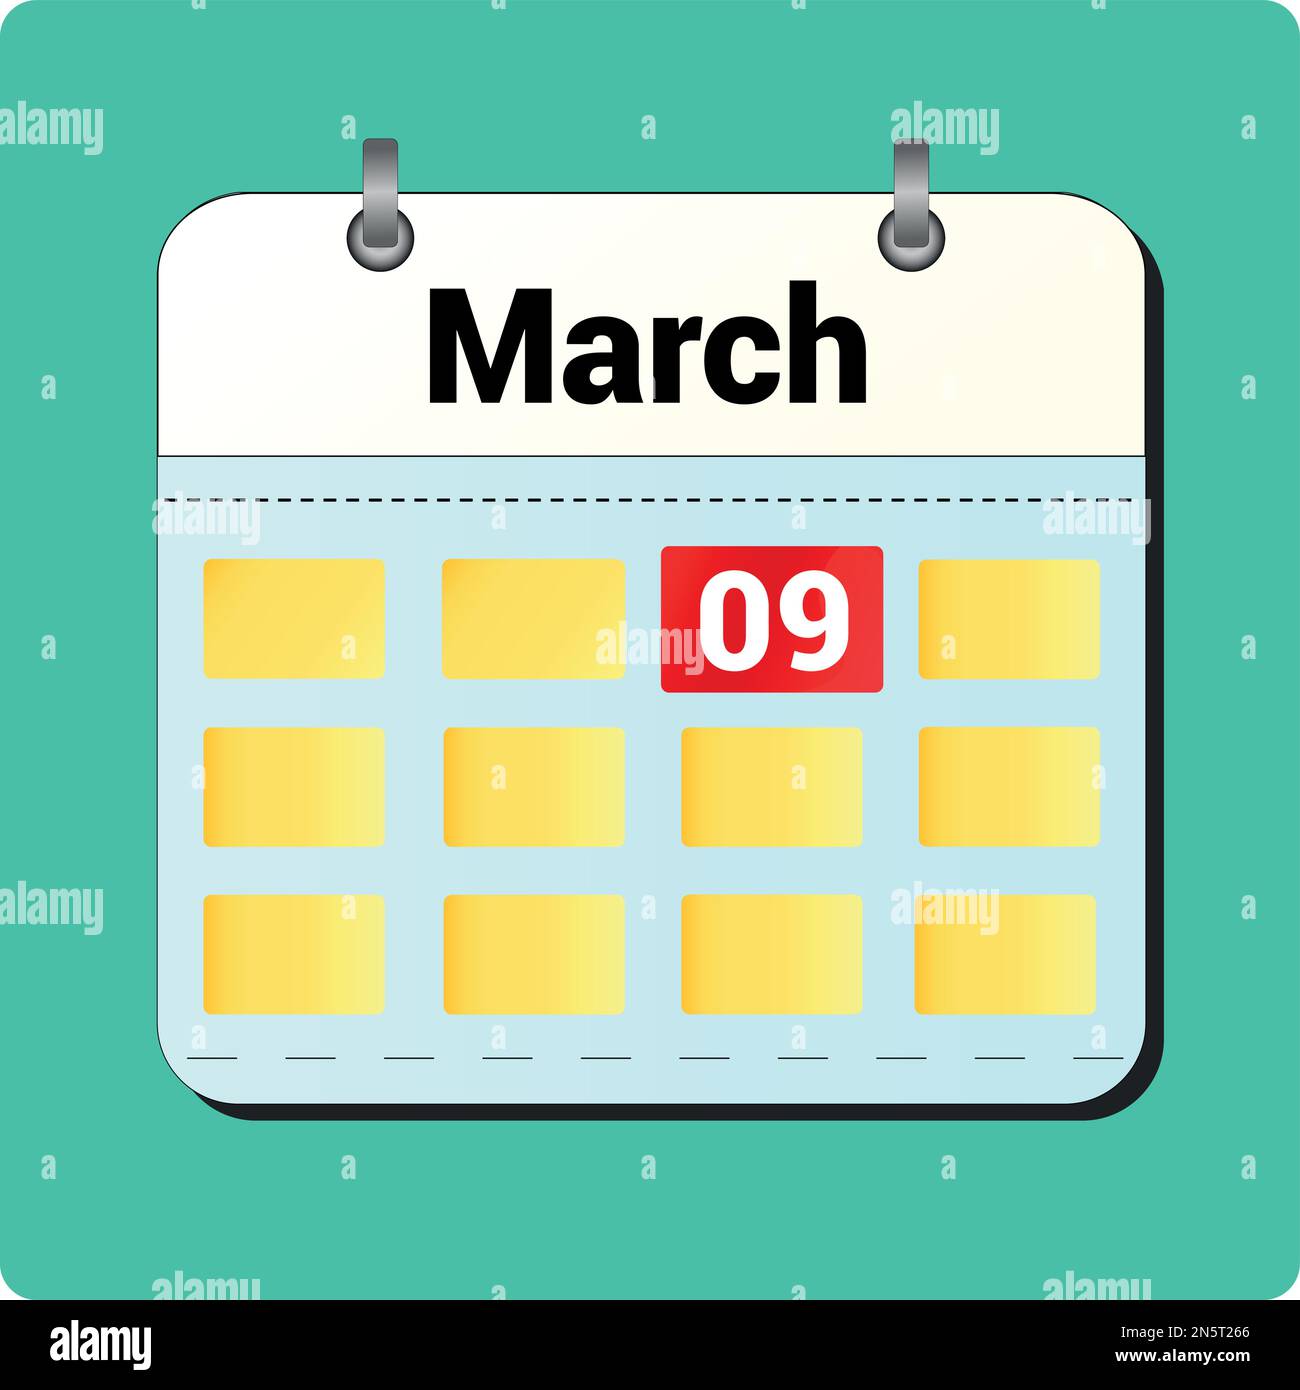 Dessin vectoriel de calendrier, date 09 mars sur la page Illustration de Vecteur